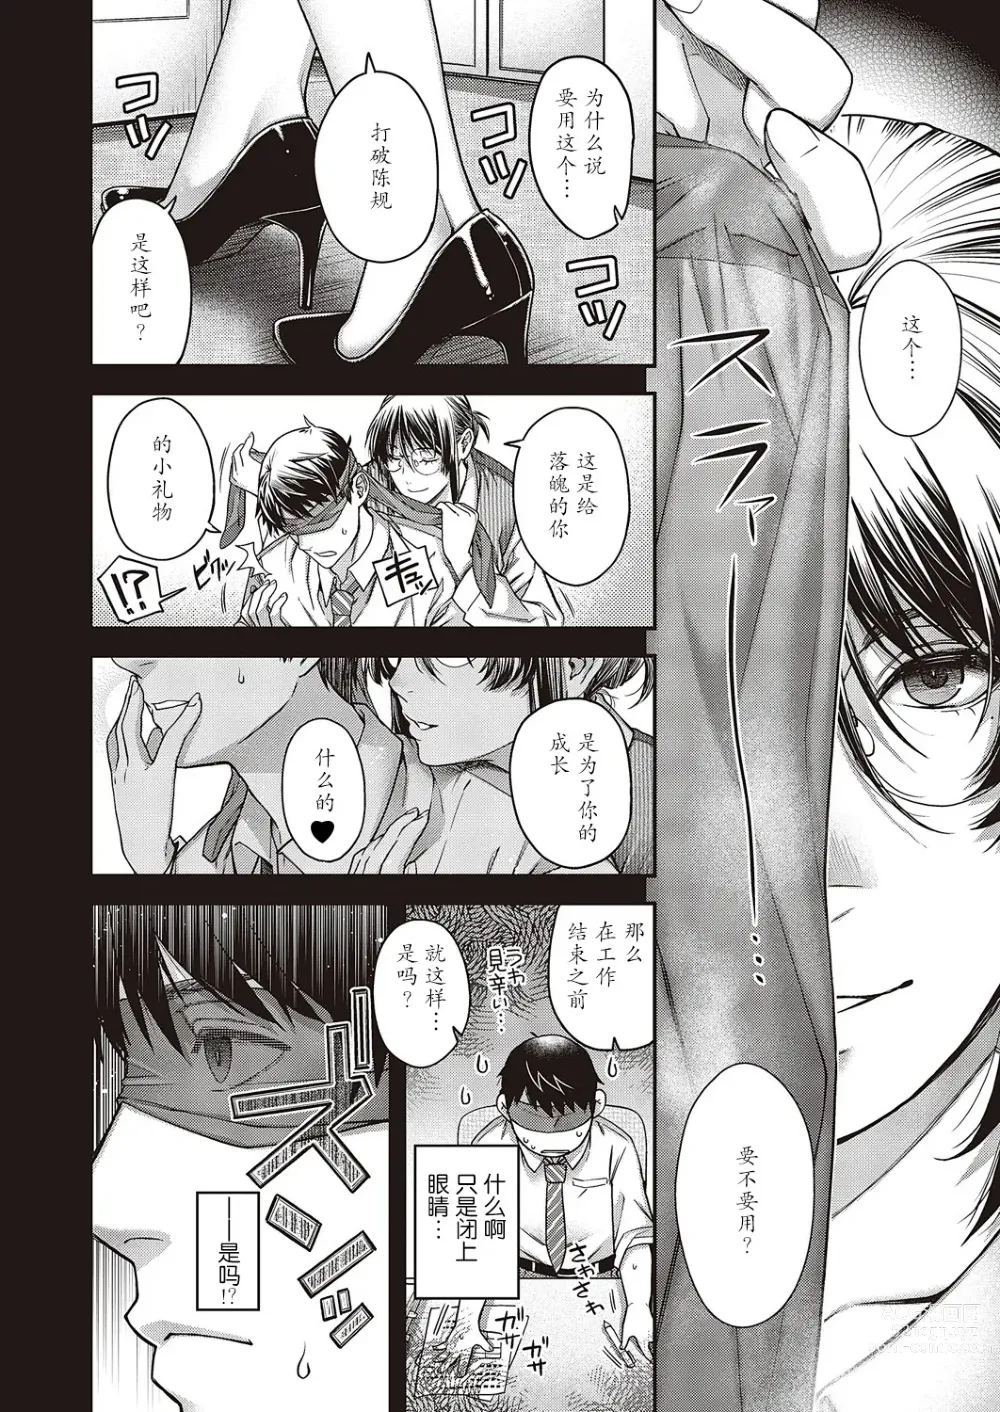 Page 8 of manga Enka no Kemono